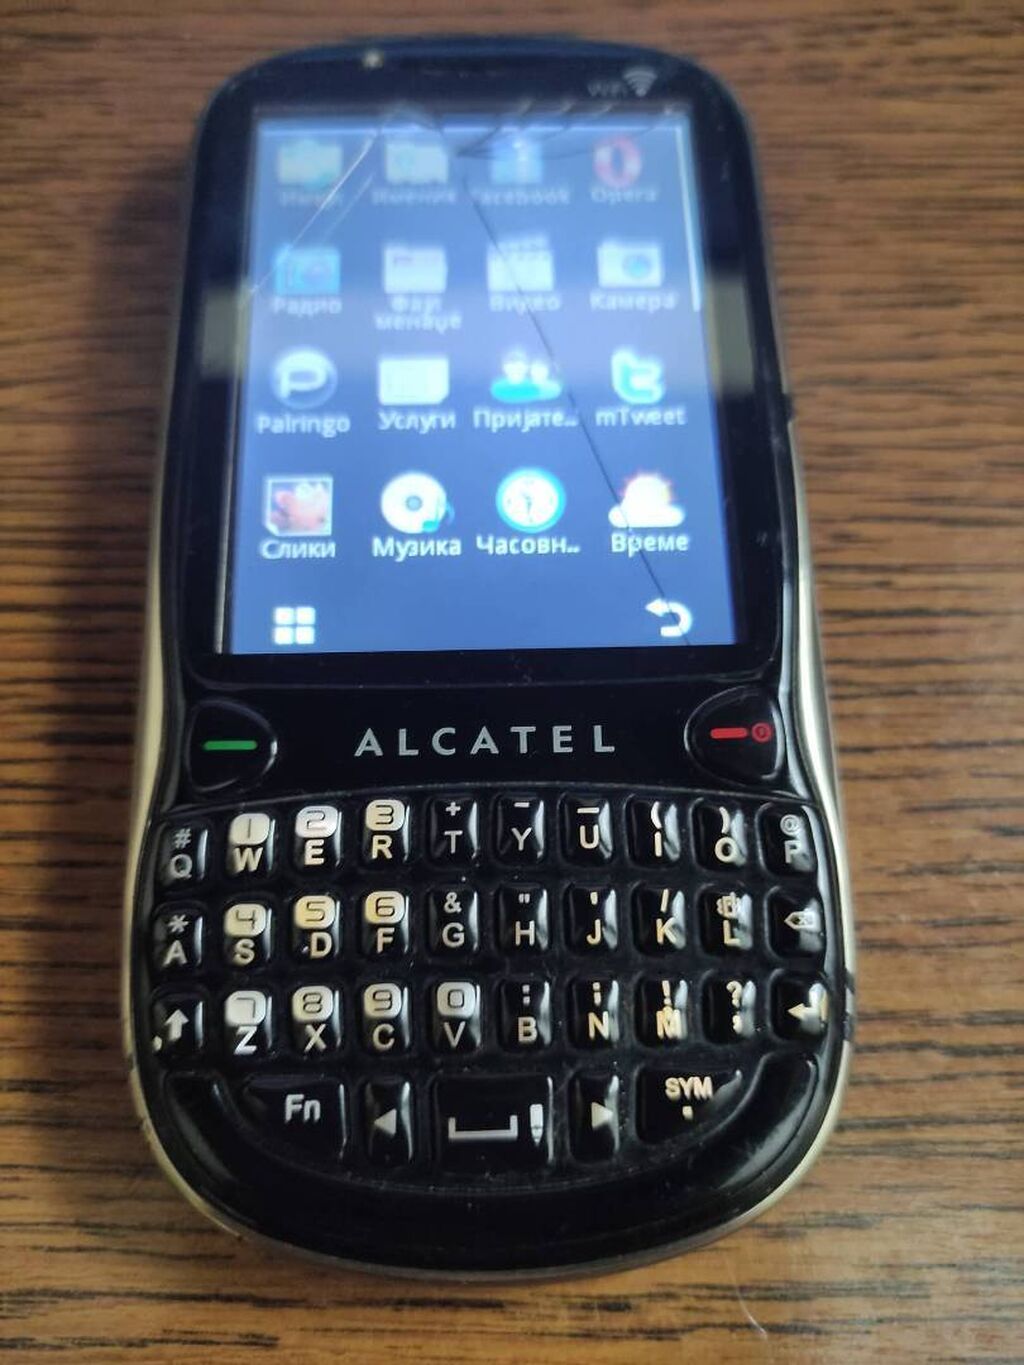 Alcatel OT-806 Telefon je u ispravnom stanju, prodaje se sa 2000 RSD | Oglas postavljen 04 Jul 2022 19:48:44: Alcatel OT-806 Telefon je u ispravnom stanju, prodaje se sa baterijom